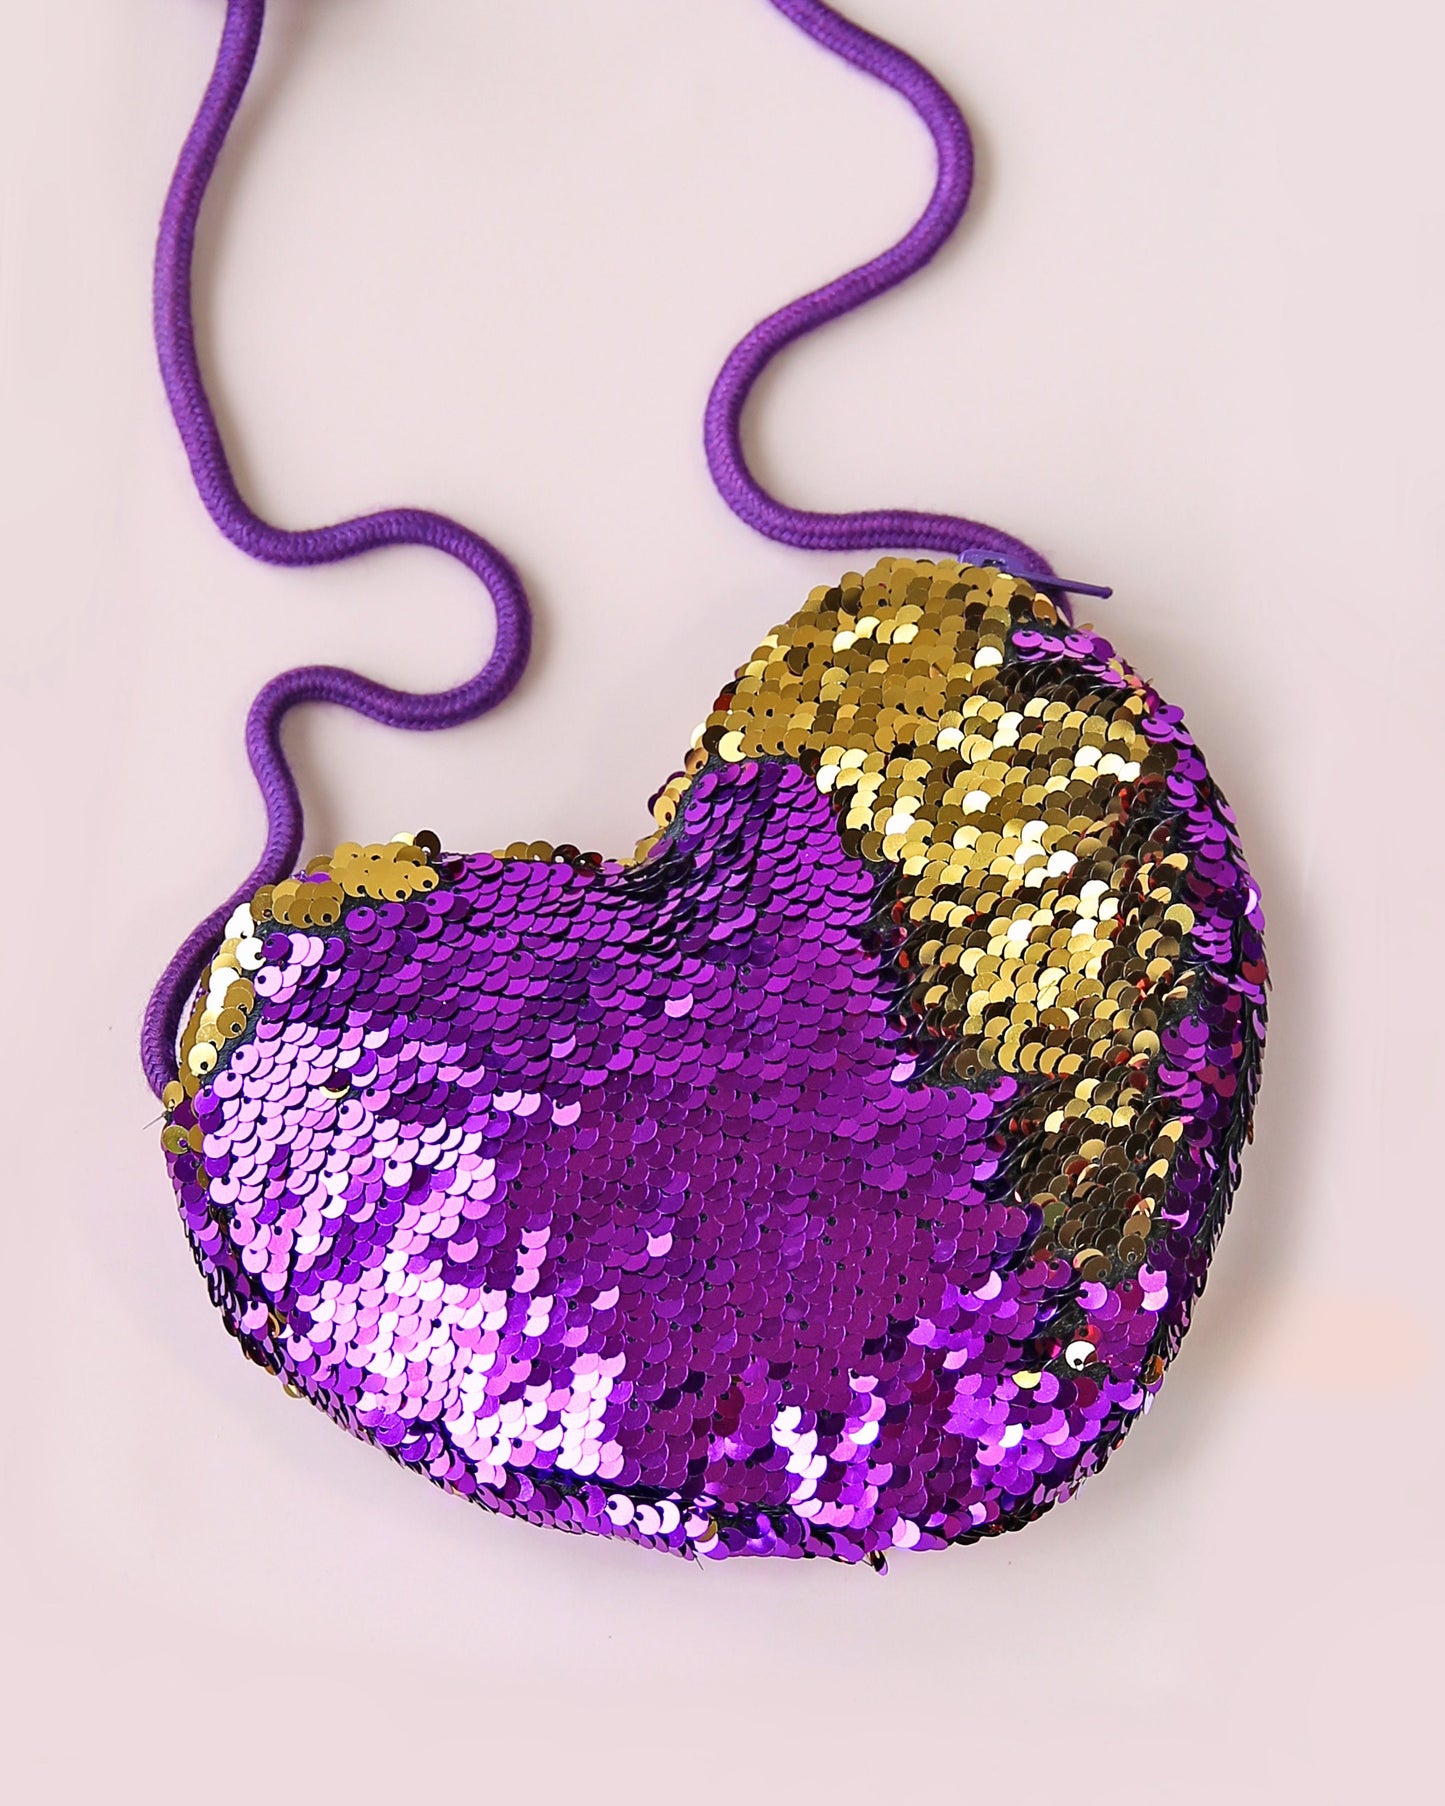 Heart Sequin Purse - Flip Sequin Heart Bag - Girls Heart Purse - Purple and Gold Heart Bag